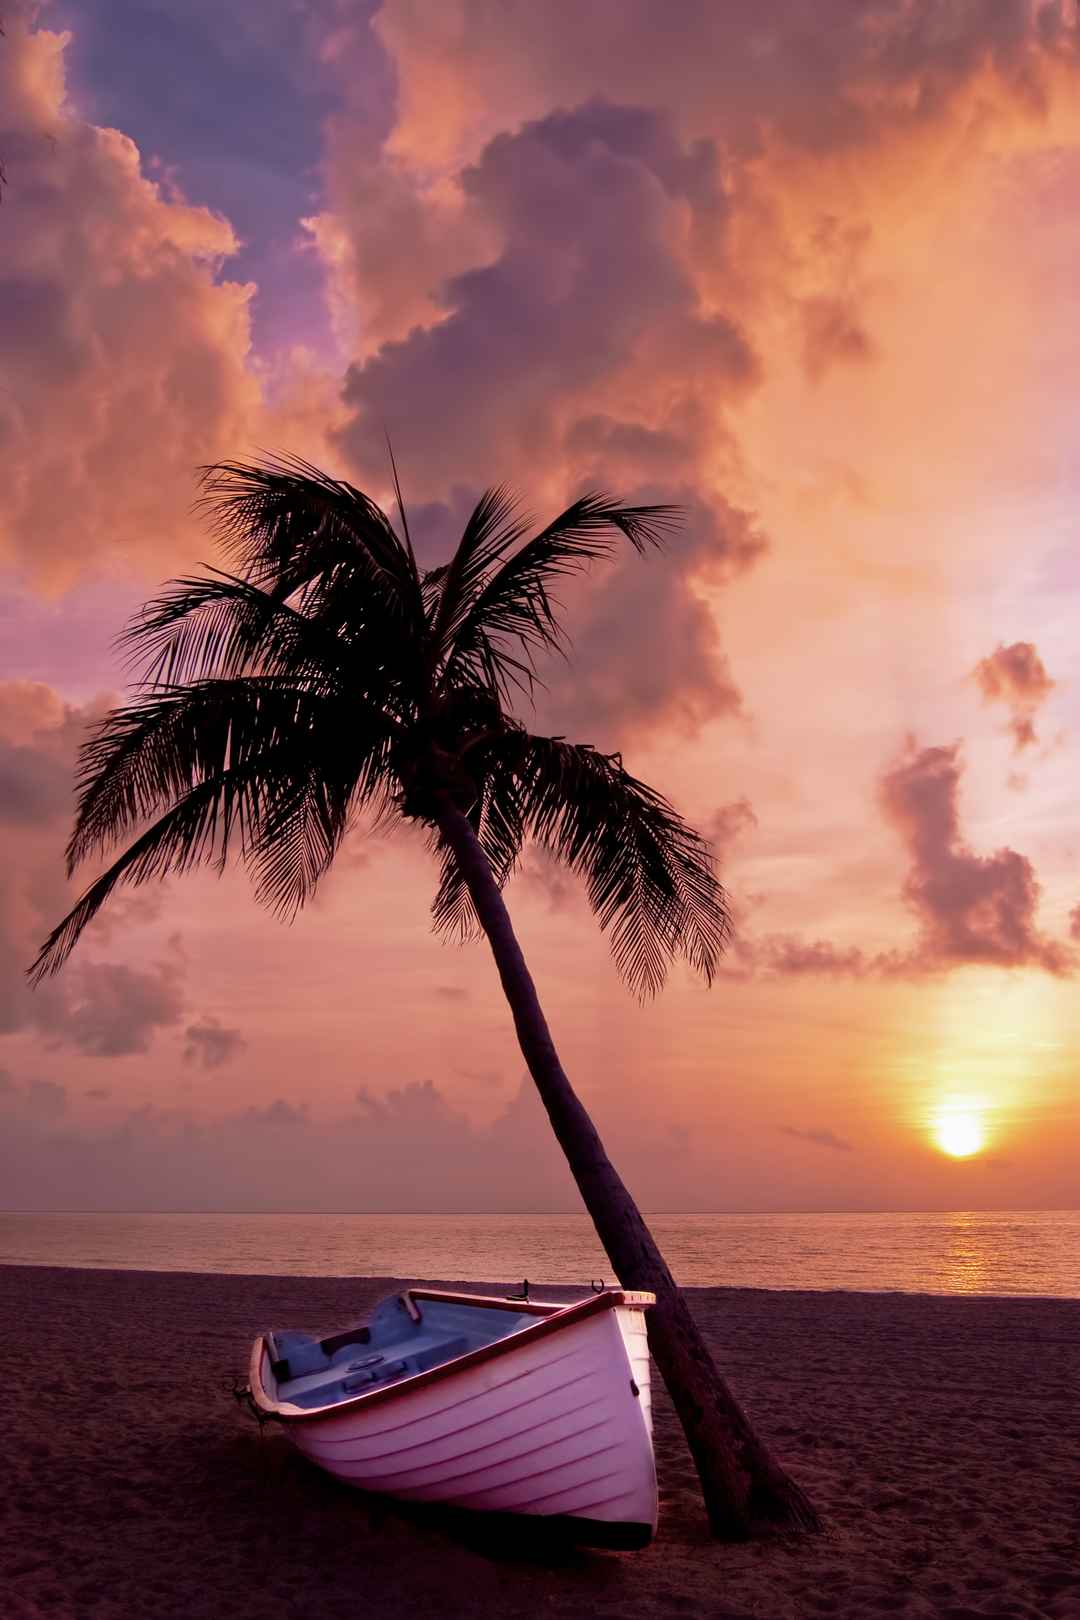 棕榈树 小船 沙滩 海洋 日出日落